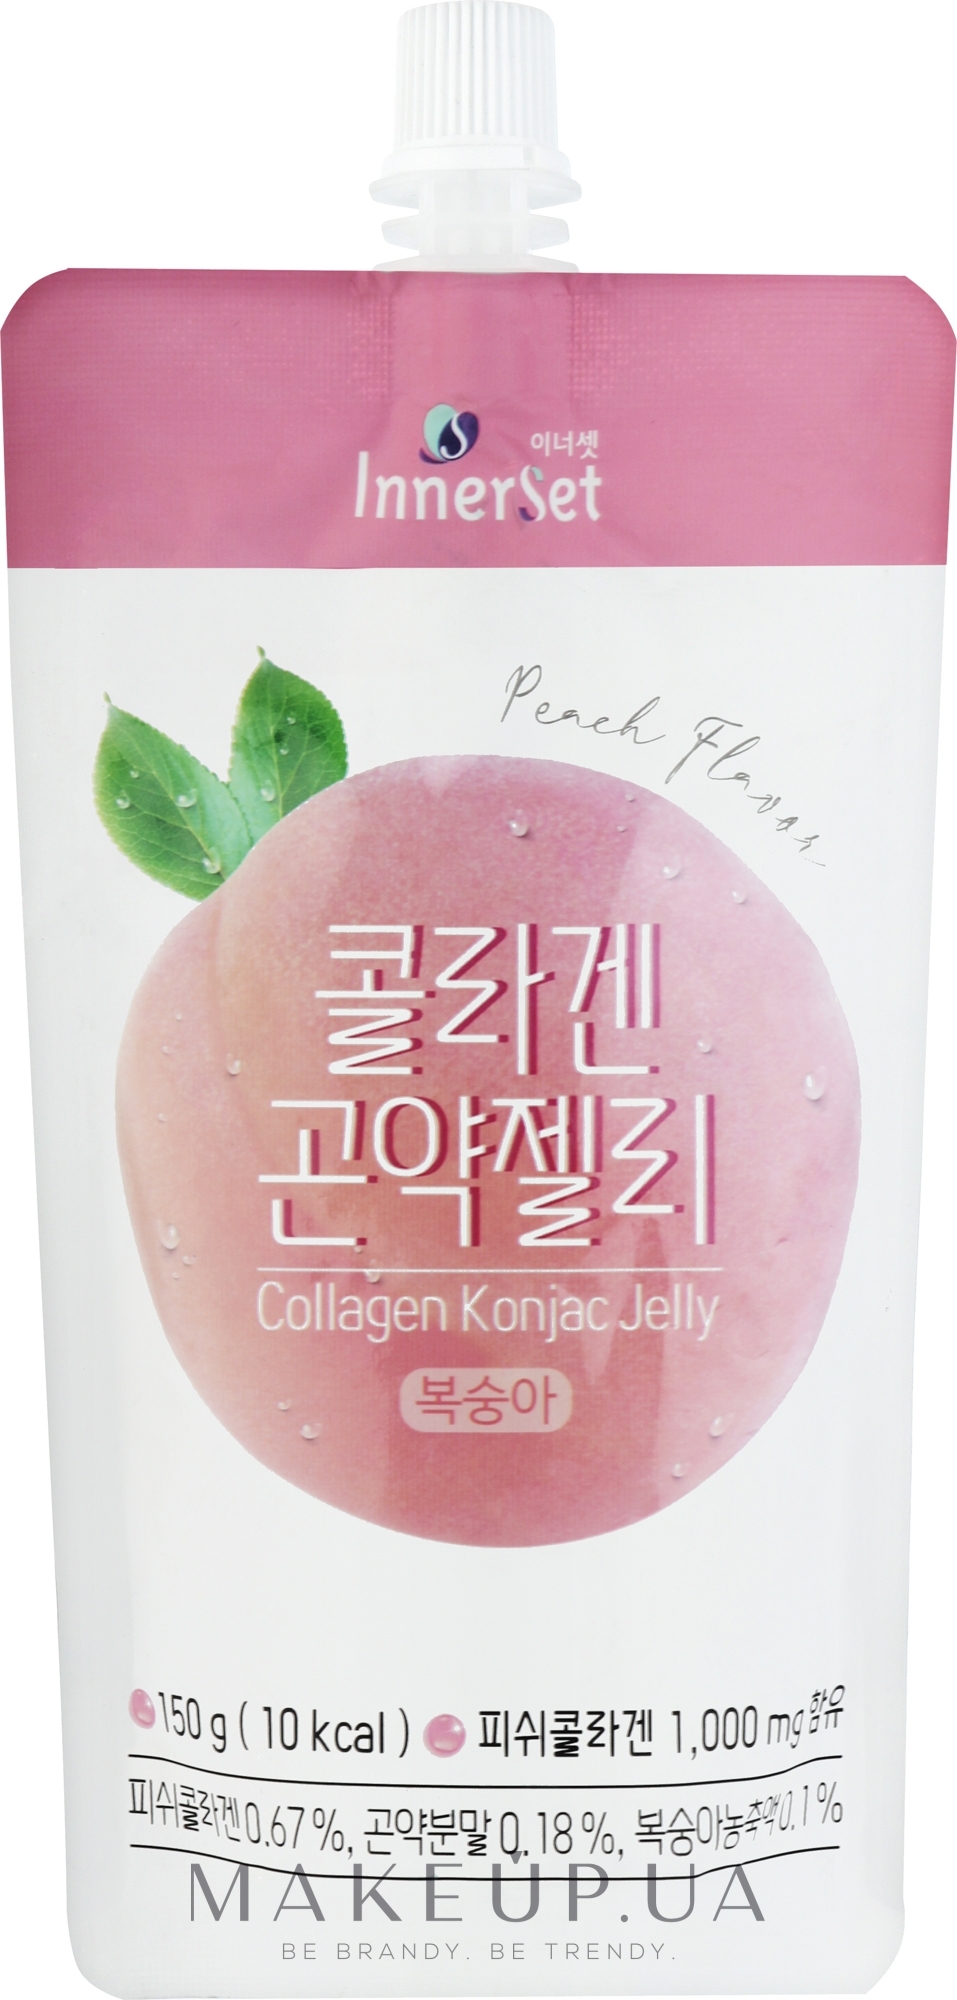 Съедобное коллагеновое желе с экстрактом персика - Innerset Collagen Konjac Jelly — фото 150g